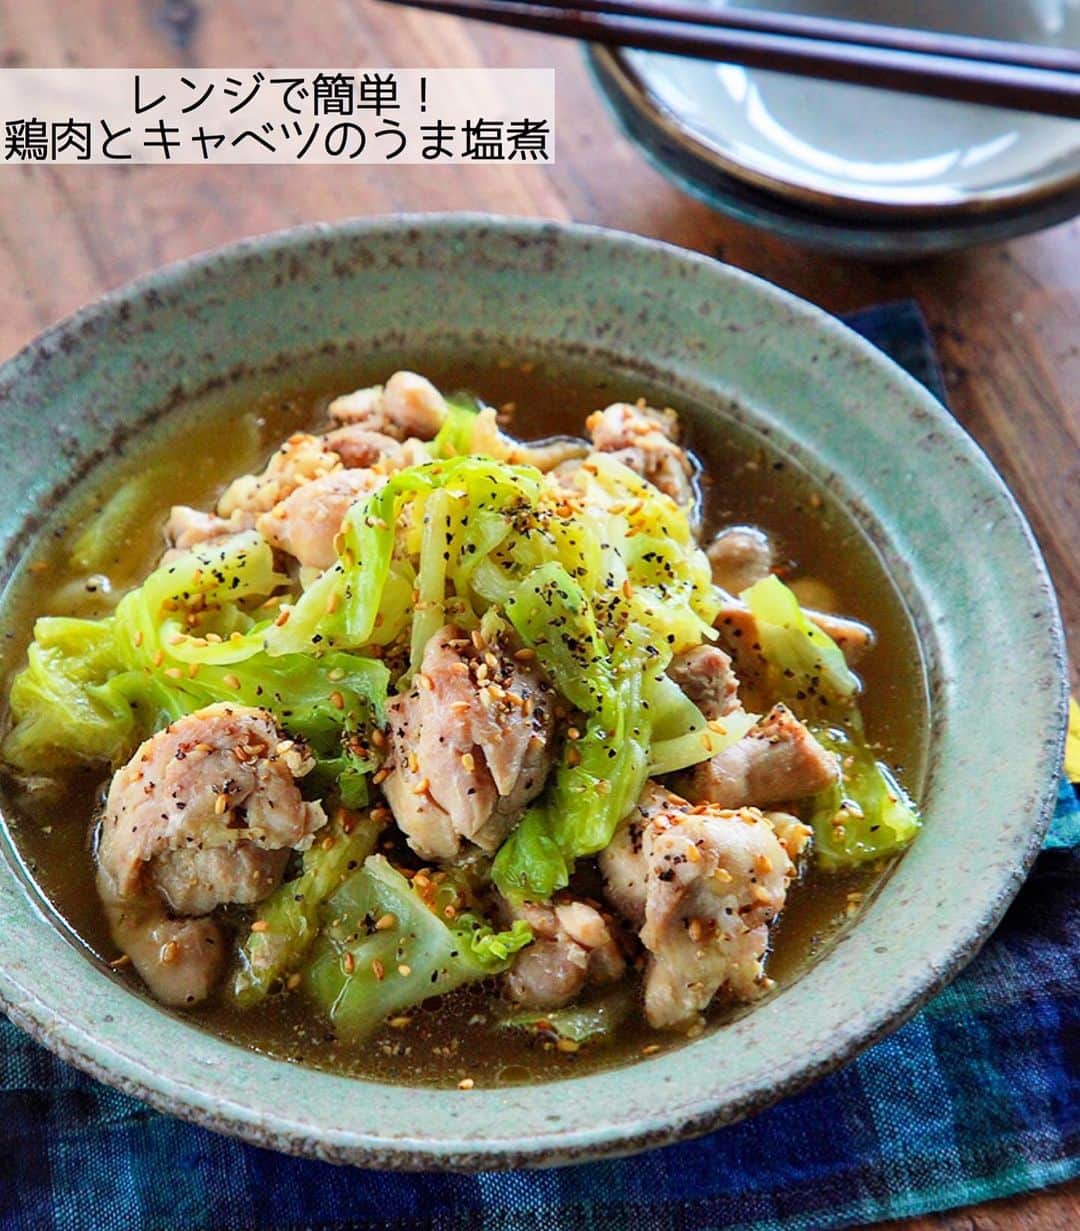 Mizuki【料理ブロガー・簡単レシピ】さんのインスタグラム写真 - (Mizuki【料理ブロガー・簡単レシピ】Instagram)「・﻿ 【レシピ】ーーーーーーーーーーーーーーー﻿ レンジde簡単！鶏肉とキャベツのうま塩煮﻿ ーーーーーーーーーーーーーーーーーーーー﻿ ﻿ ﻿ ﻿ おはようございます(*^^*)﻿ ﻿ 今日はレンチンレシピ♡﻿ ［鶏肉とキャベツのうま塩煮］を﻿ ご紹介させていただきます♩﻿ ジューシーな鶏肉はもちろん﻿ 旨味満点のスープを吸ったキャベツが﻿ 最高に美味しいですよ〜(*´艸`)﻿ (レンジで作ったと言わなければ﻿ きっときっとバレません😂㊙︎)﻿ ﻿ ボウルひとつでできるので﻿ お気軽にお試し下さいね(*^^*)﻿ ﻿ ﻿ ﻿ ーーーーーーーーーーーーーーーーーーーー﻿ 【2人分】﻿ 鶏もも肉...1枚(250g)﻿ キャベツ...1/5個(200g)﻿ ●水...50ml﻿ ●鶏がらスープ・醤油・ごま油...各小1﻿ ●にんにくチューブ...2cm﻿ ごま・粗挽き黒こしょう...各適量﻿ ﻿ 1.鶏肉は3cm大に切って●を揉み込む。耐熱ボウルにキャベツをちぎって入れ、鶏肉をたれごとのせる。﻿ 2.ふんわりラップをかけ、600Wのレンジで7分加熱する。取り出して混ぜ、更に3分加熱して混ぜる。﻿ 3.器に盛り、ごまと粗挽き黒こしょうをかける。﻿ ーーーーーーーーーーーーーーーーーーーー﻿ ﻿ ﻿ ﻿ 《ポイント》﻿ ♦︎キャベツは適当にざっくりちぎればOK♩﻿ ♦︎2回目レンチンする時もふんわりラップをかけて下さい♩ ♦︎辛いのがお好きな方は鷹の爪(小口切り)を加えるのもおすすめです♩﻿ ﻿ ﻿ ﻿ ﻿ ﻿ ﻿ ＿＿＿＿＿＿＿＿＿＿＿＿＿＿＿＿＿﻿ 🎀6刷重版しました🎀﻿ 混ぜて焼くだけ。はじめてでも失敗しない！﻿ 【#ホットケーキミックスのお菓子 】﻿ ﻿ 一冊まるっとホケミスイーツ♩﻿ 普段のおやつから﻿ 特別な日にも使えるレシピを﻿ この一冊に詰め込みました(*^^*)﻿ ホットケーキミックスを使えば﻿ 簡単に本格的なお菓子が作れますよ♡﻿ ＿＿＿＿＿＿＿＿＿＿＿＿＿＿＿＿＿﻿ ﻿ ﻿ ﻿ ＿＿＿＿＿＿＿＿＿＿＿＿＿＿＿＿＿＿＿﻿ 📕6刷重版しました📕﻿ 簡単・時短！ 毎日のごはんがラクになる﻿ ✨🦋 【 #Mizukiの今どき和食 】🦋✨﻿ ＿＿＿＿＿＿＿＿＿＿＿＿＿＿＿＿＿＿＿﻿ なるべく少ない材料で﻿ 手間も時間も省きながら﻿ 簡単にできるおいしい和食レシピ♩﻿ 簡単に失敗なくマスターできる一冊で﻿ もっと気軽に、カジュアルに﻿ 和食を楽しんで下さいね(*^^*)﻿ ＿＿＿＿＿＿＿＿＿＿＿＿＿＿＿＿＿＿＿﻿ ﻿ ⭐️ストーリー、ハイライト、プロフ画面に﻿ 本のURLを貼らせていただいております♩﻿ →(@mizuki_31cafe )﻿ ﻿ ﻿ ﻿ ﻿ ﻿ #レンジ#レンチン#キャベツ#煮物#塩#Mizuki#簡単レシピ#時短レシピ#節約レシピ#料理#レシピ#フーディーテーブル#マカロニメイト#おうちごはん#デリスタグラマー#料理好きな人と繋がりたい#おうちごはん#写真好きな人と繋がりたい#お菓子作りならコッタlover#foodpic#cooking#recipe#lin_stagrammer#foodporn#yummy#鶏肉とキャベツのうま塩煮m」7月22日 7時02分 - mizuki_31cafe